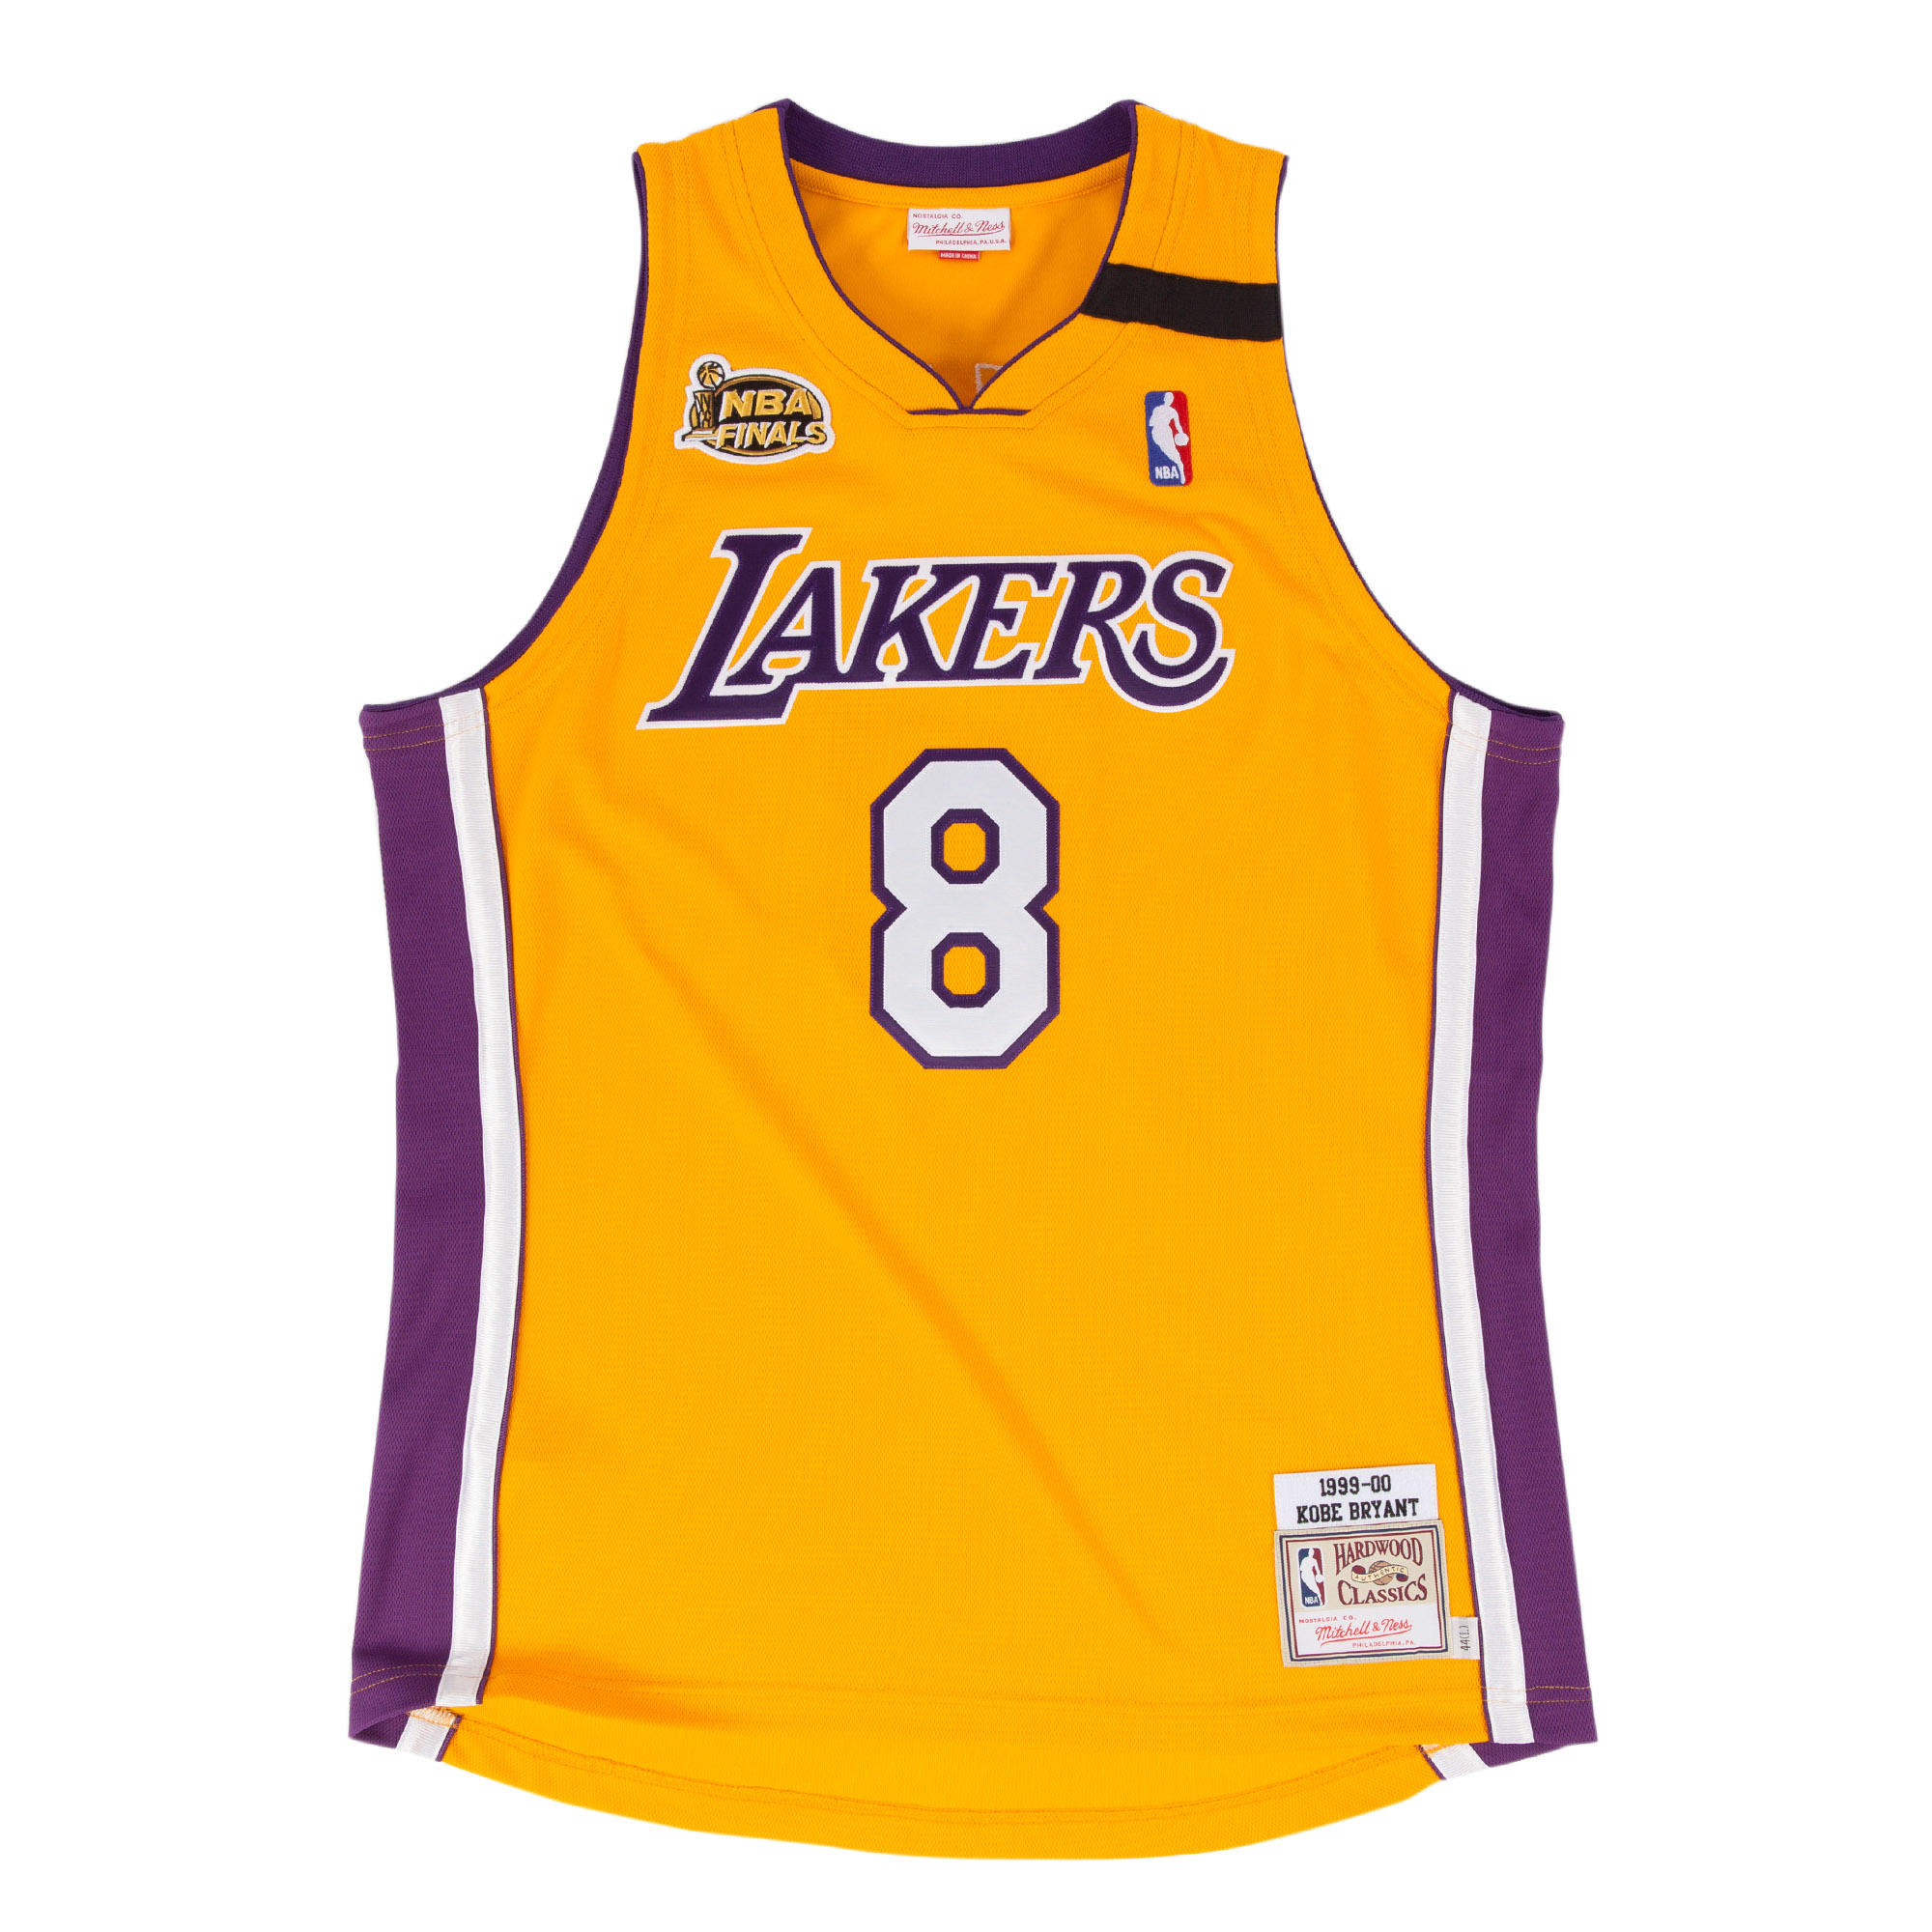 Mitchell & Ness | LA Lakers Yellow Kobe Bryant 1999-00 Authentic Jersey2000 x 2000